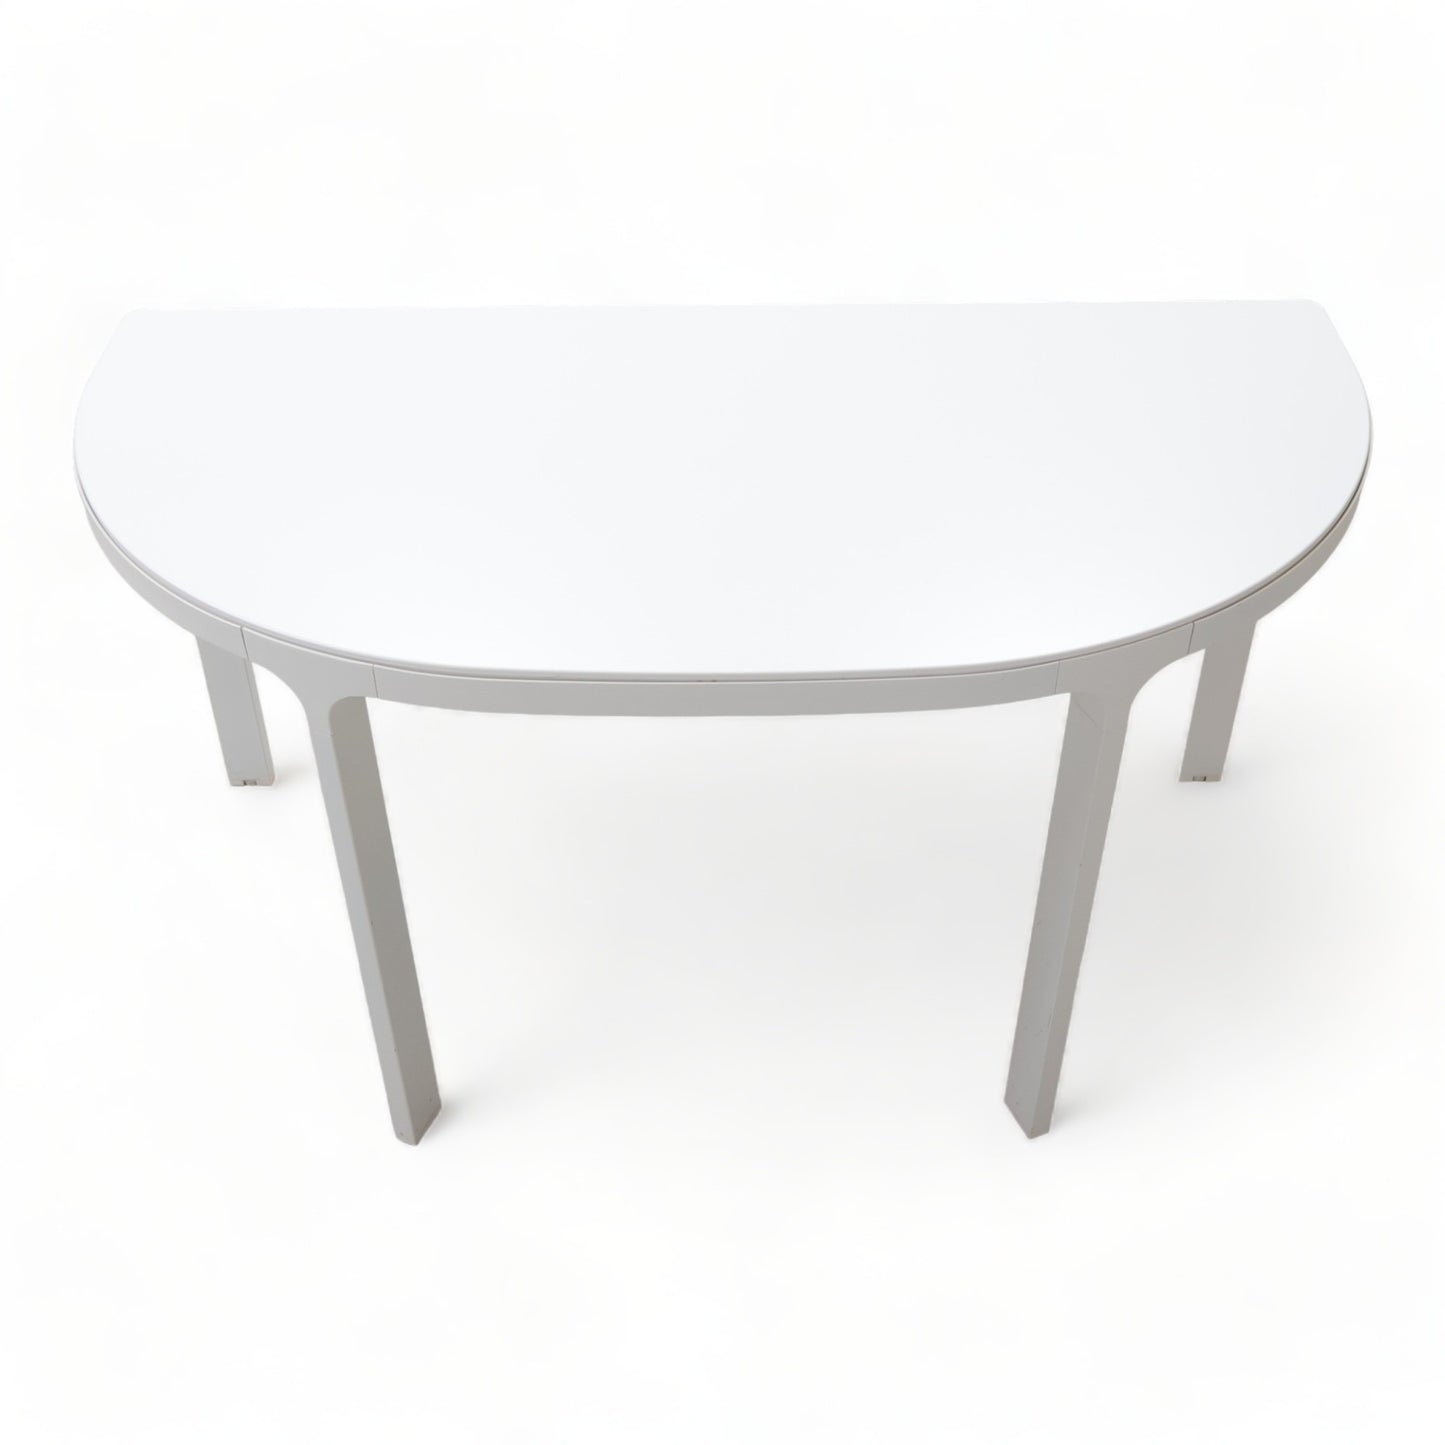 Kvalitetssikret | 140x70 cm, IKEA Bekant møtebord, halvsirkel